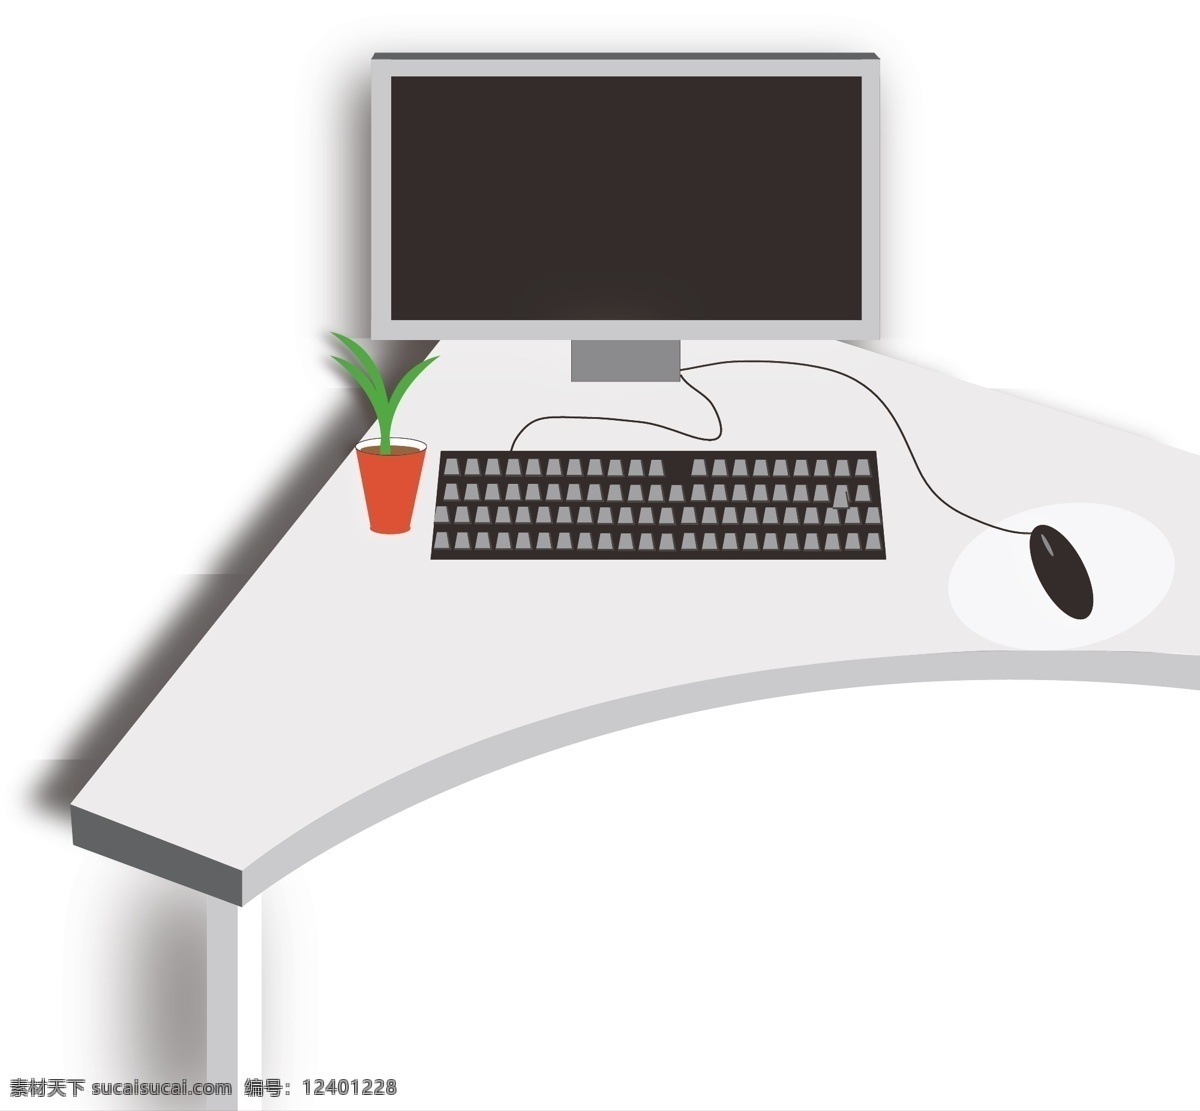 2.5d插画 简约风格 电脑桌面 鼠标绿植 绿色植物 免扣可用 原创立体 黑白主体